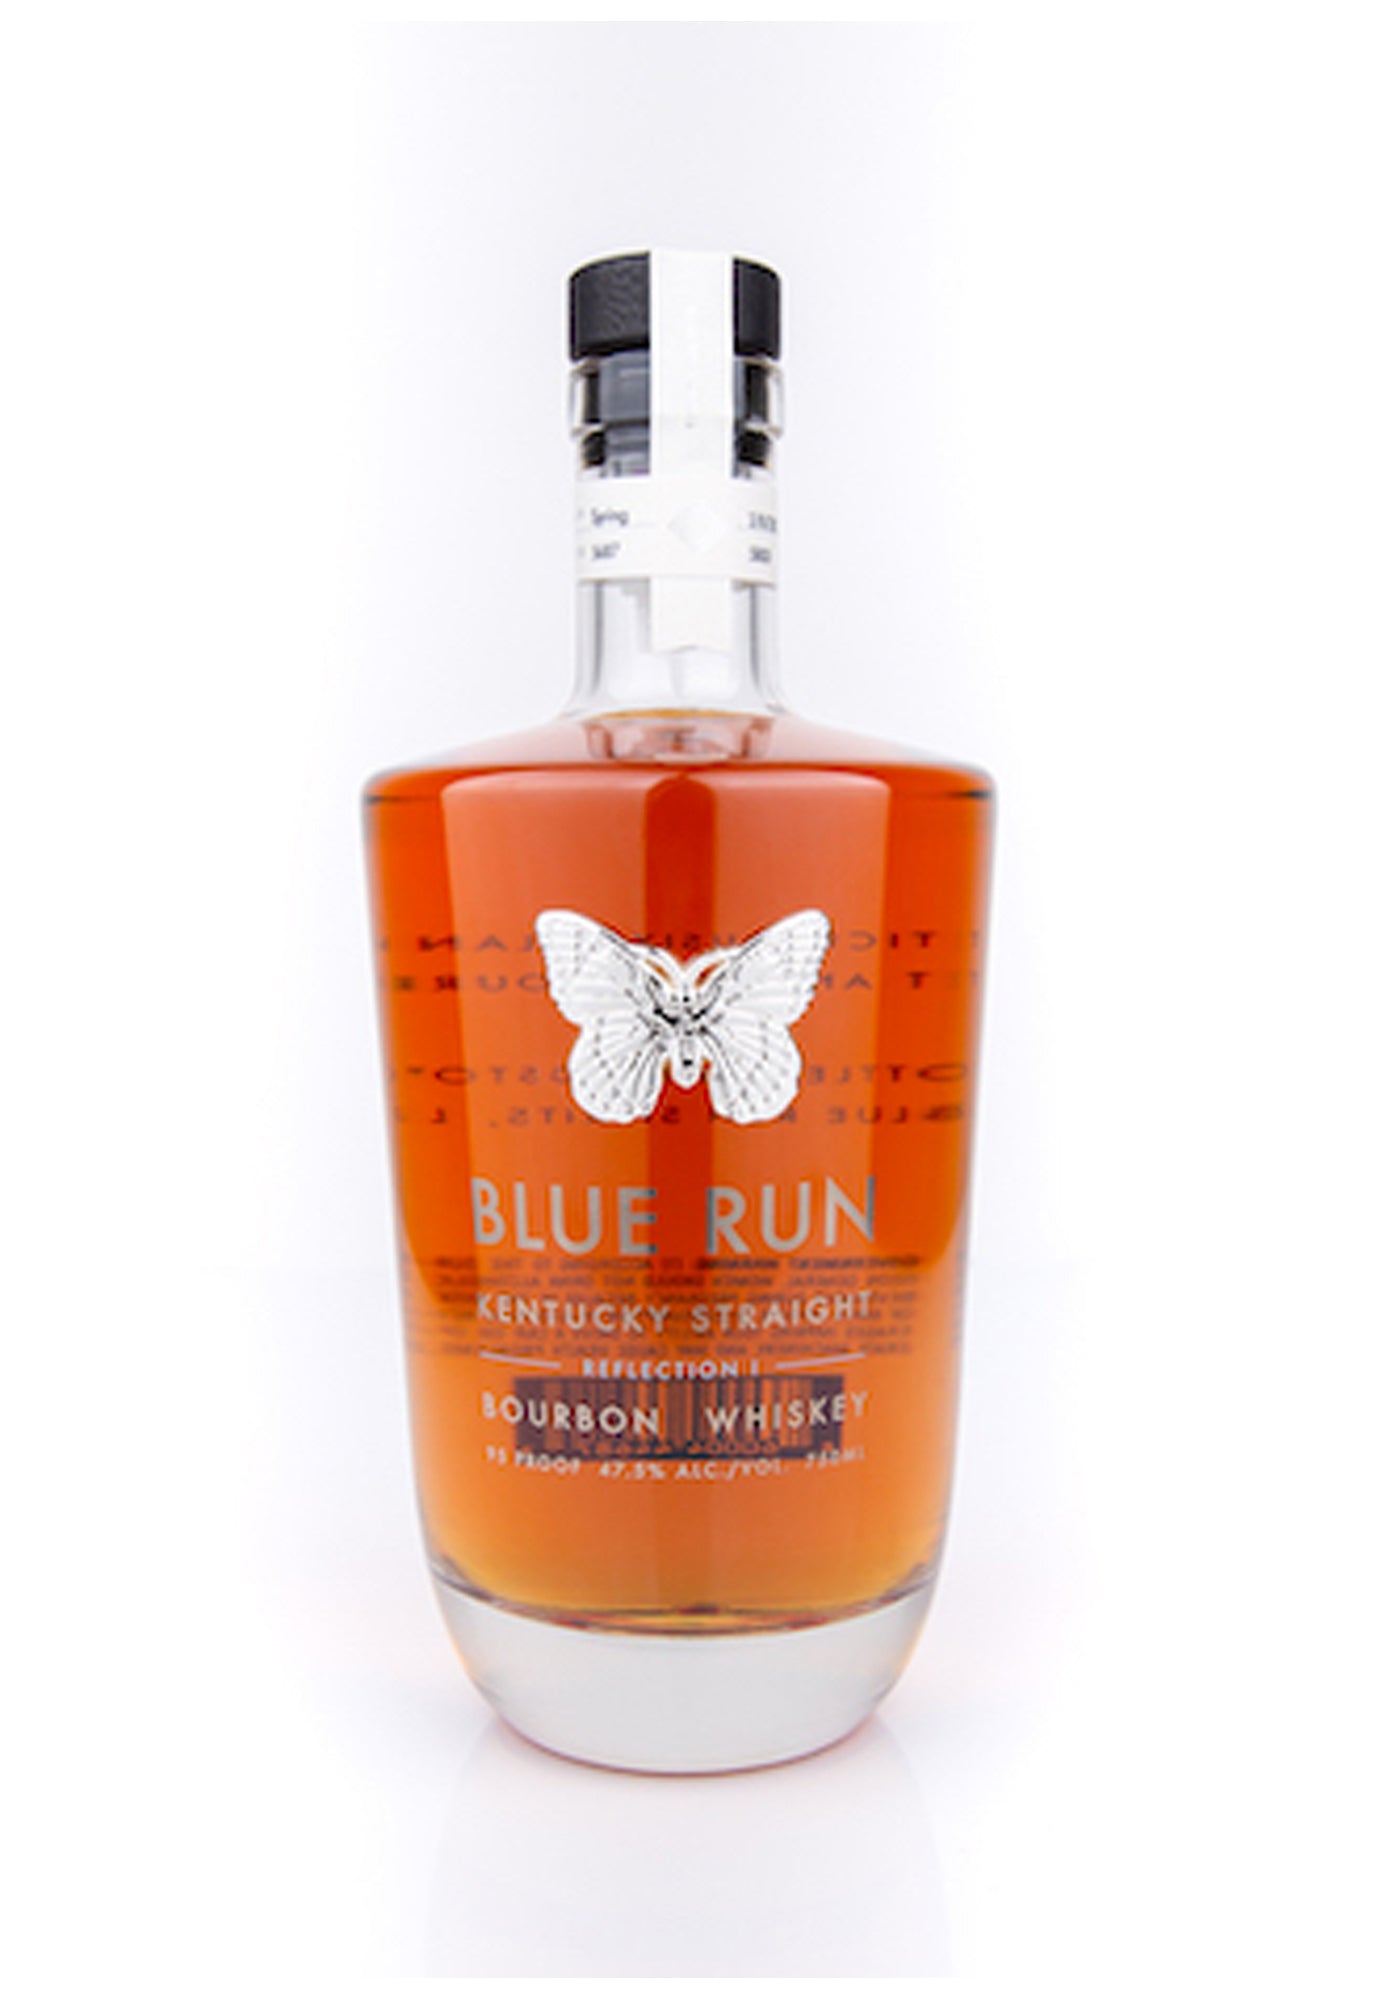 Blue Run Kentucky Straight "Reflection 1" Bourbon